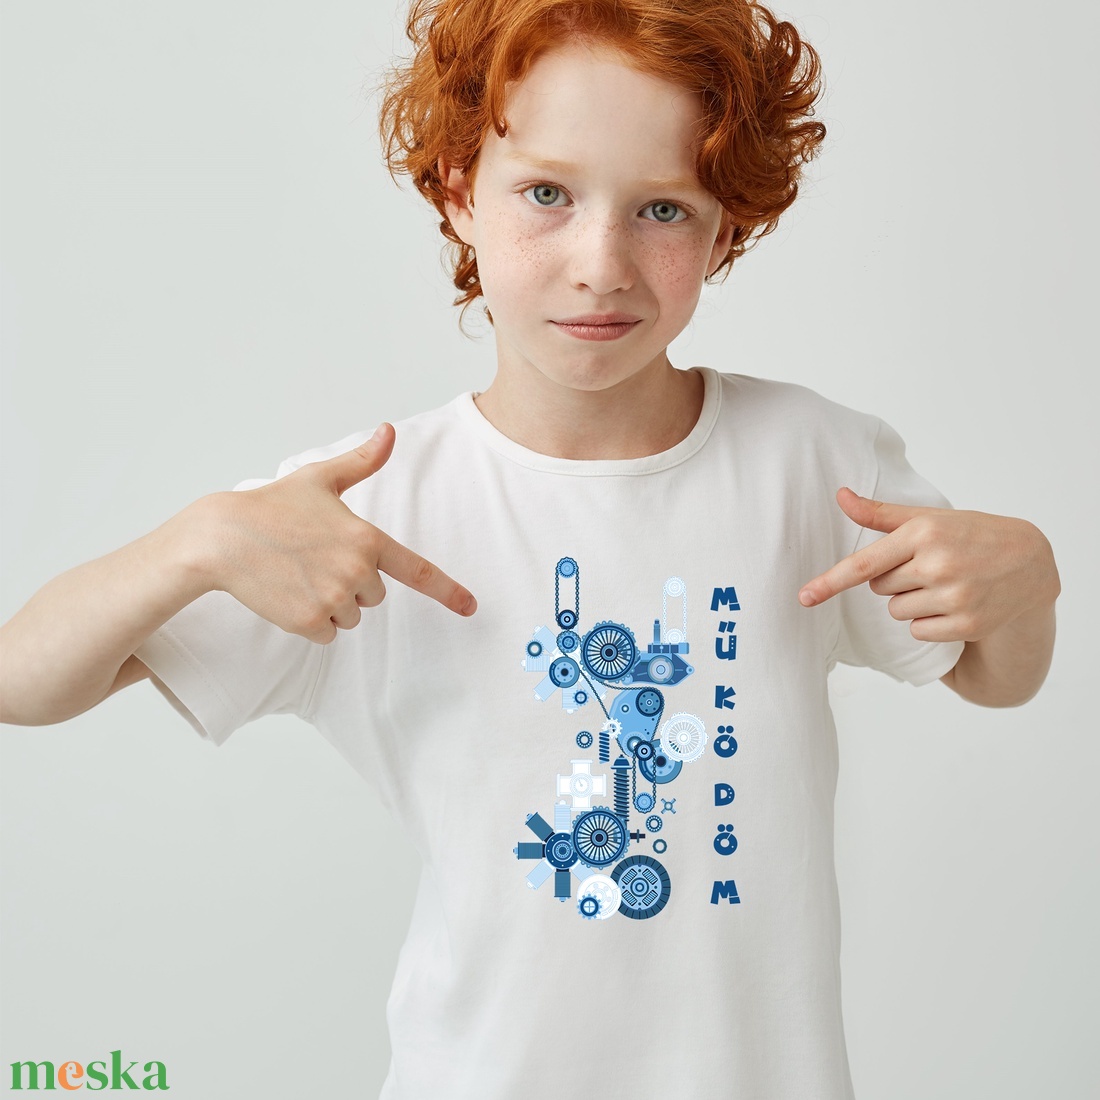 Robotos fiú gyerek póló - ruha & divat - babaruha & gyerekruha - póló - Meska.hu